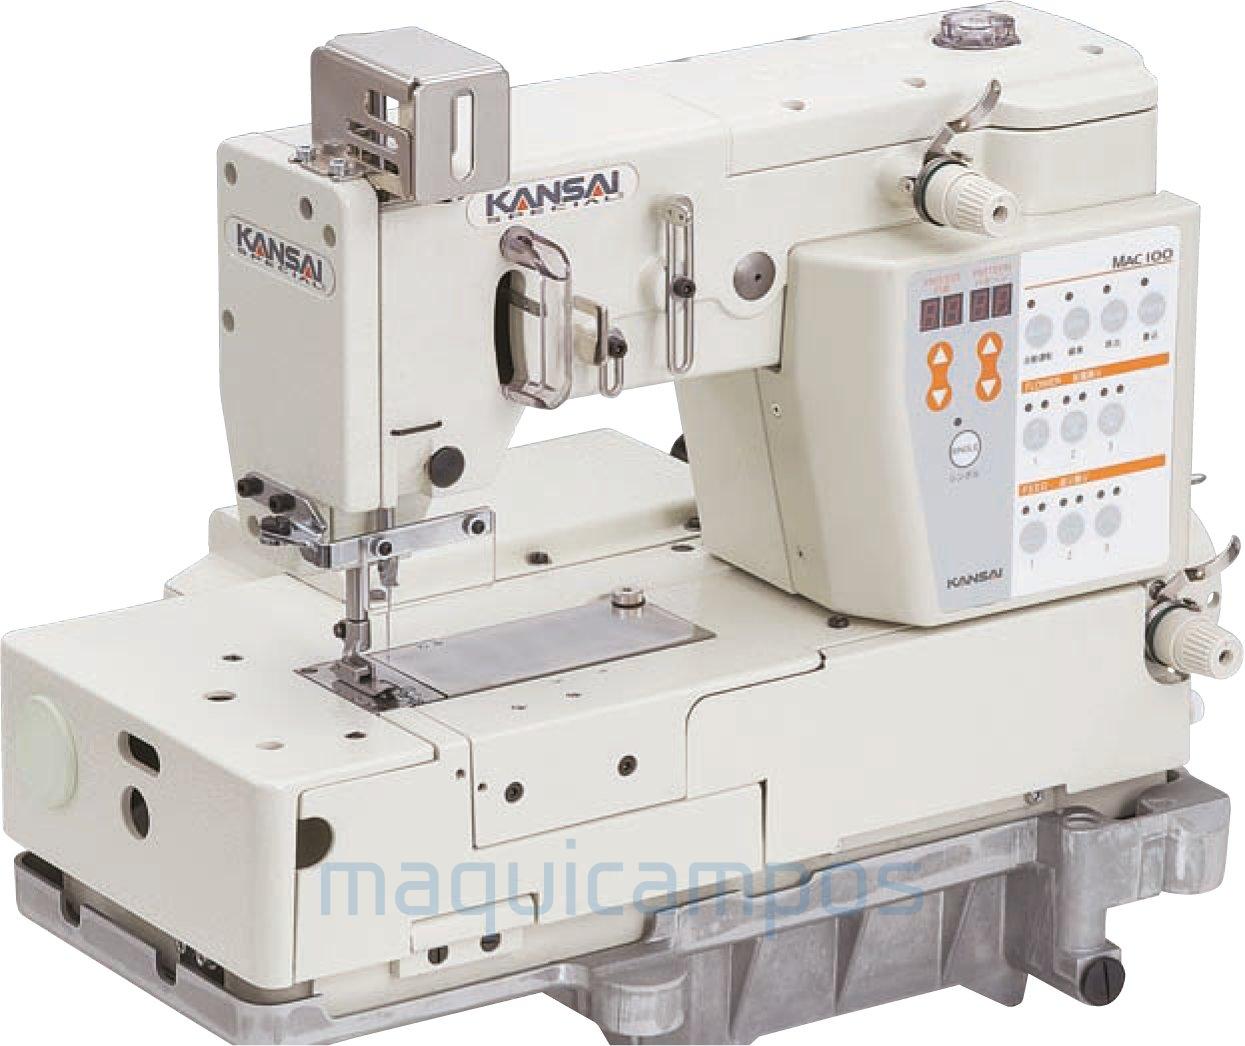 Kansai Special MAC100 Máquina de Costura de Ponto Decorativo